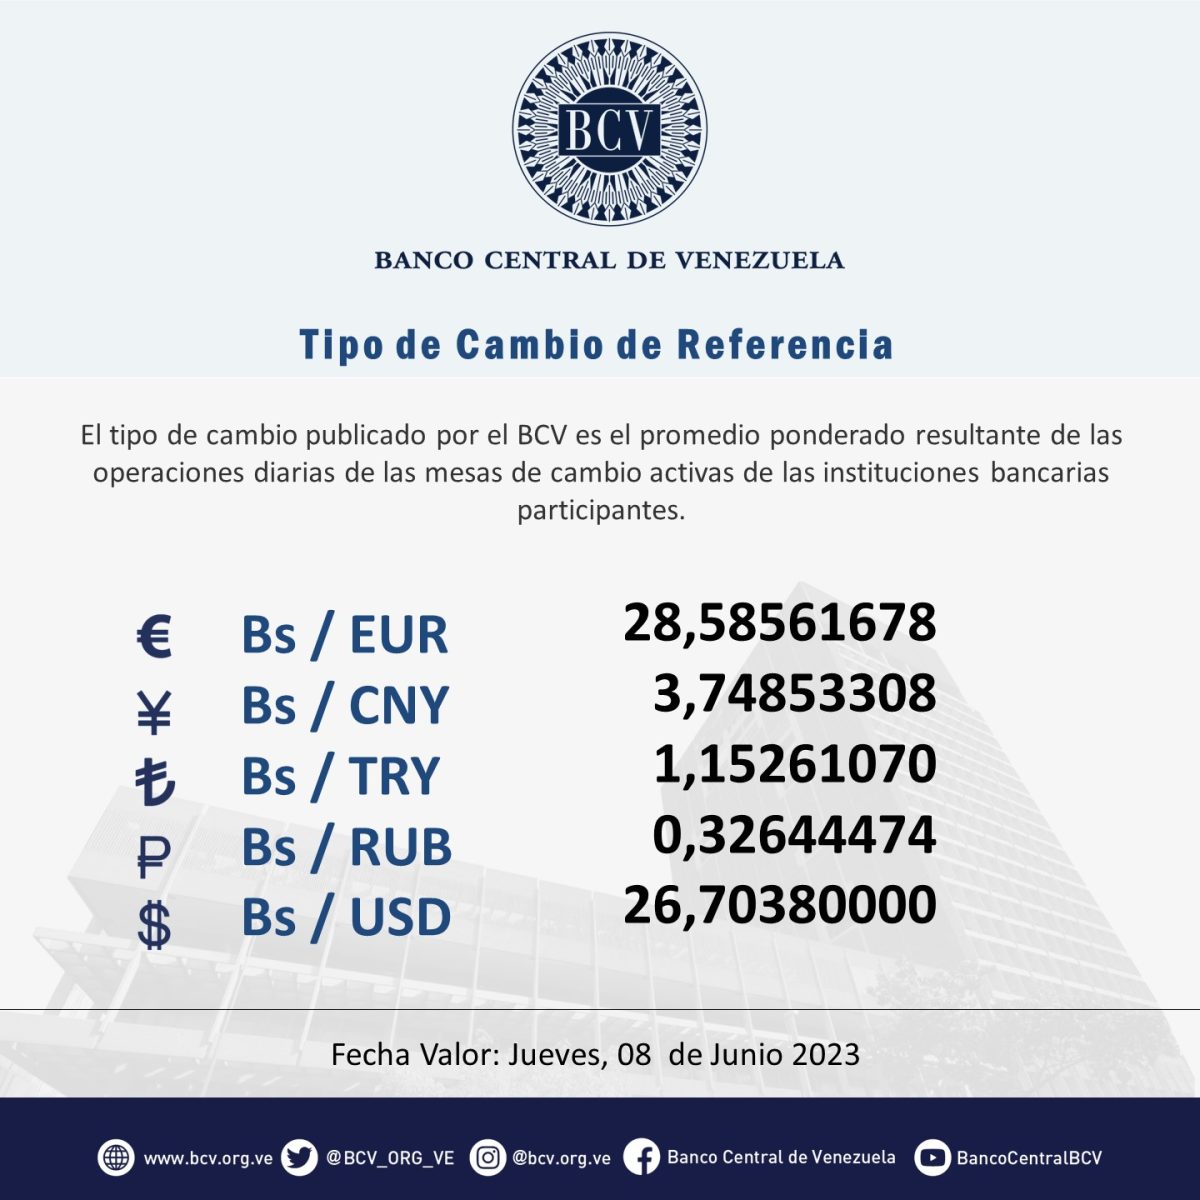 dolartoday en venezuela precio del dolar este jueves 8 de junio de 2023 laverdaddemonagas.com bcv1